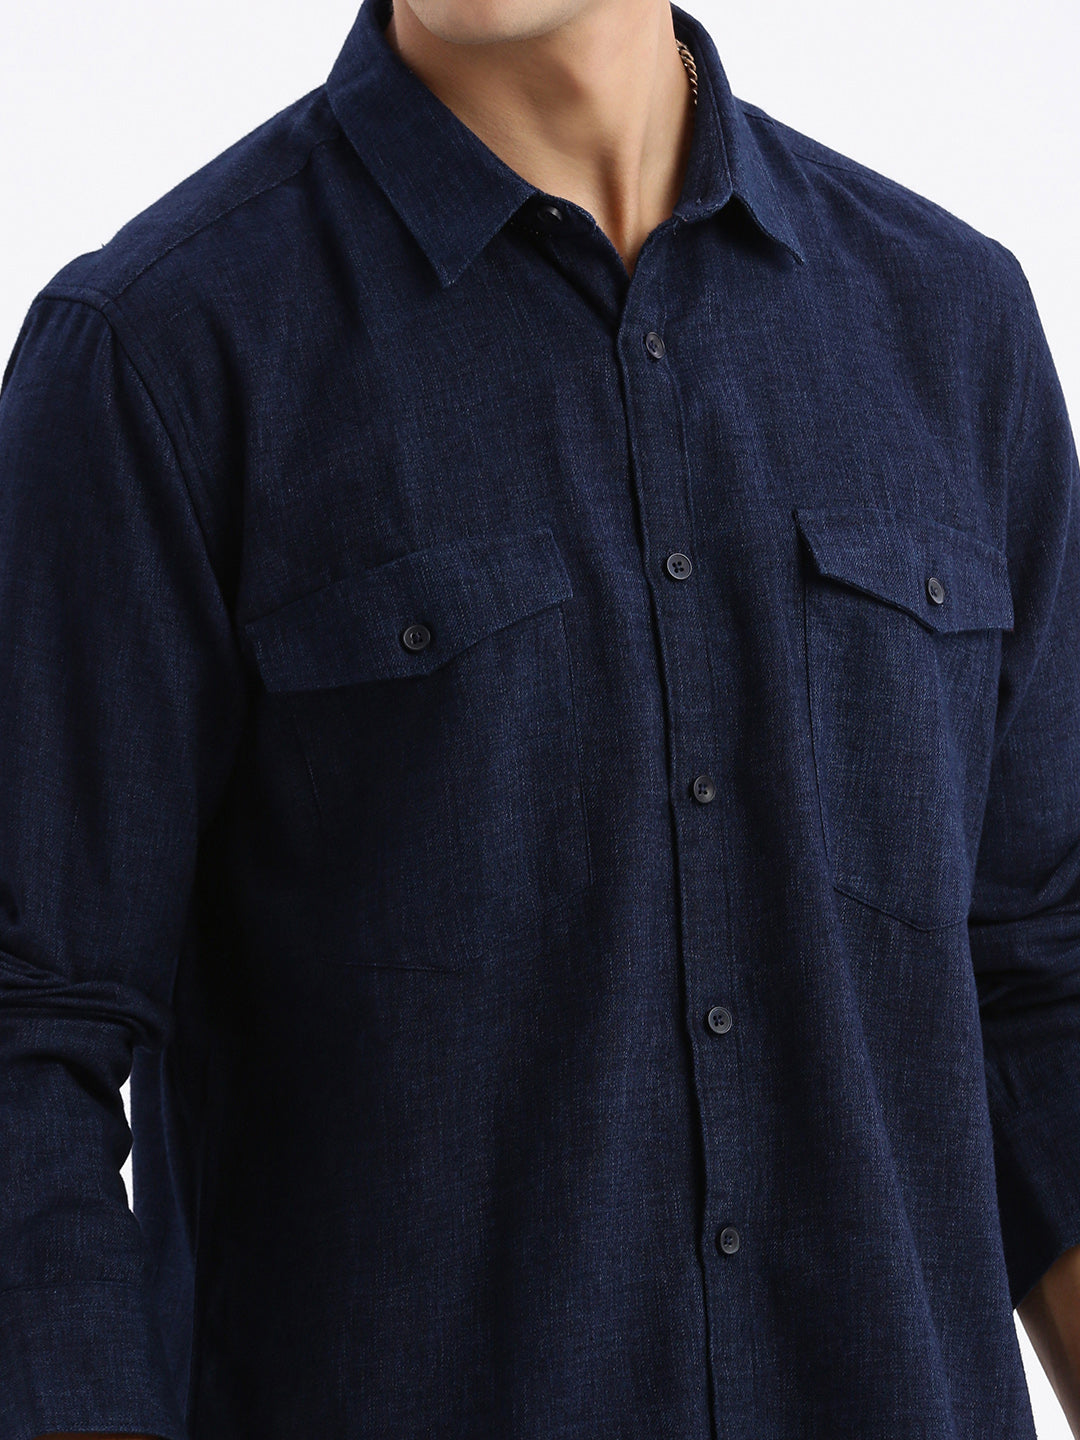 Men Spread Collar Solid Slim Fit Navy Blue Shirt